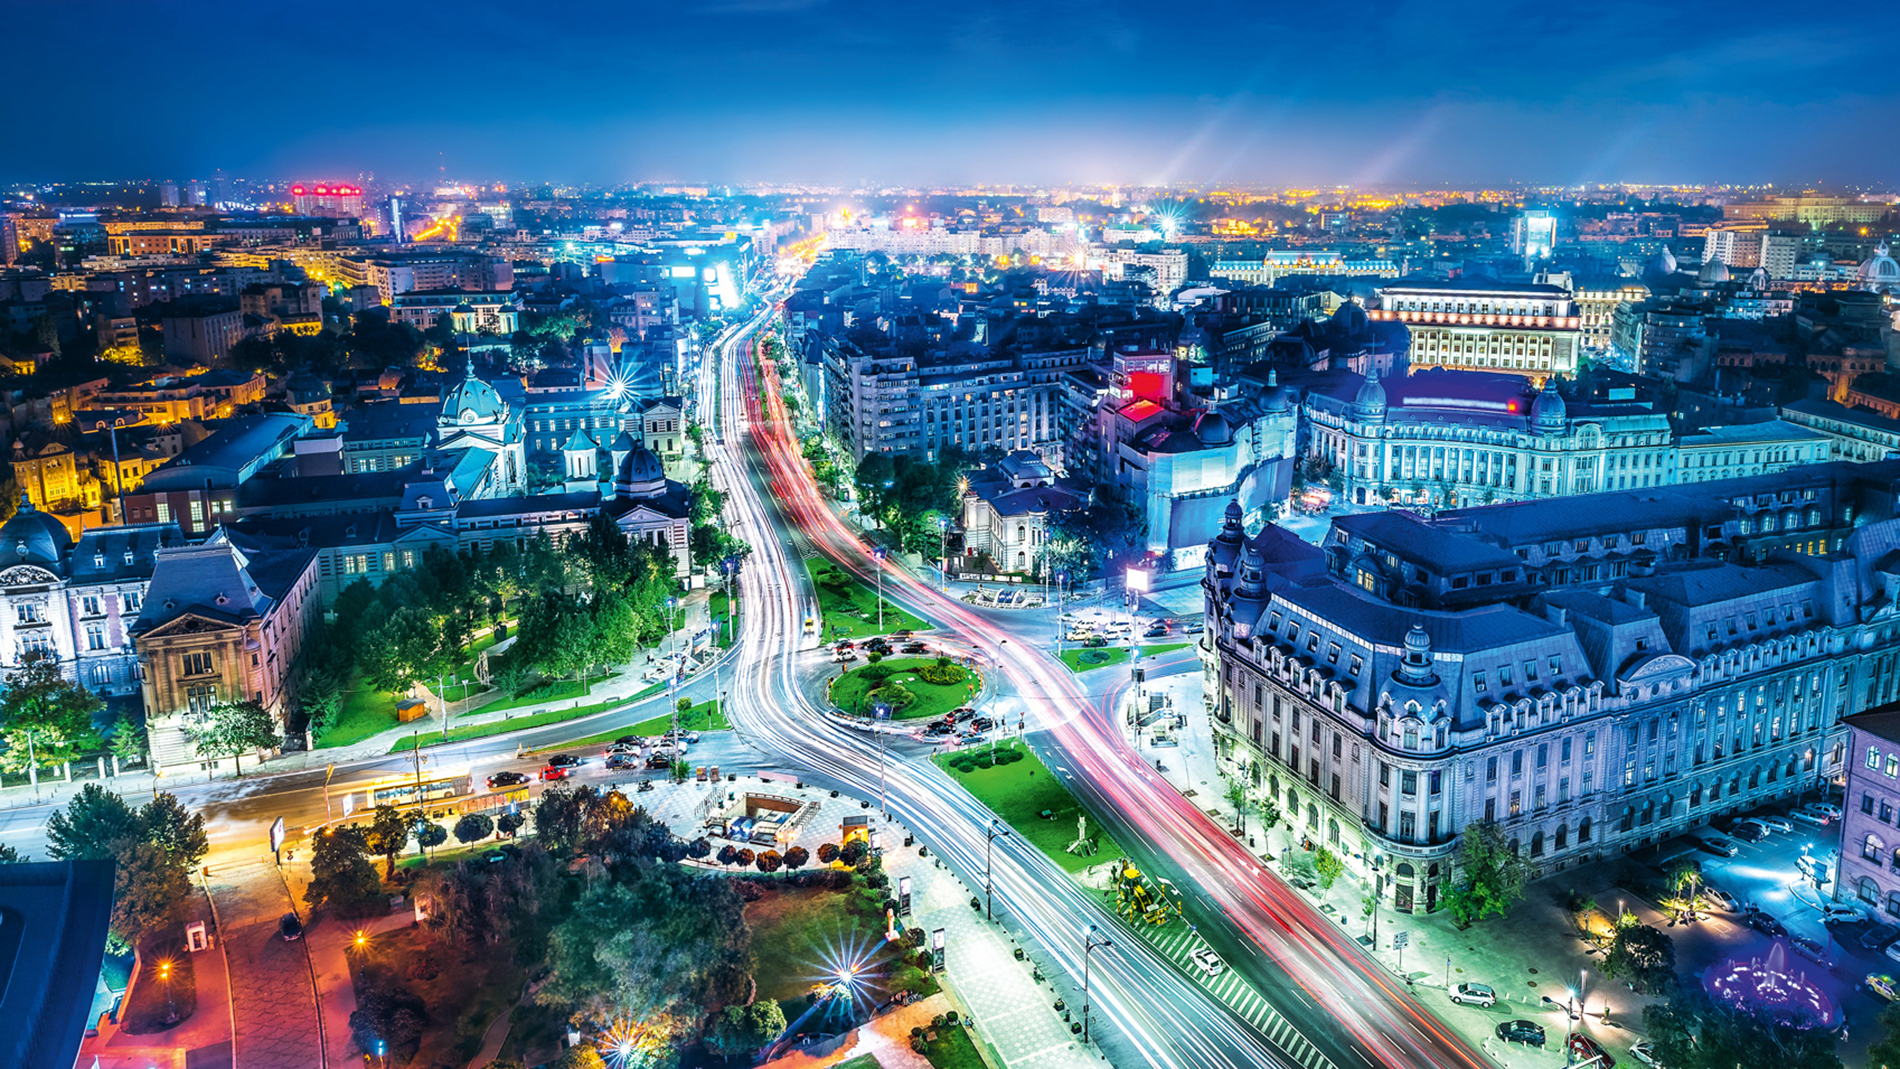 Mit seinen 1,8 Mio. Einwohnern trägt Bukarest maßgeblich zur wirtschaftlichen Dynamik Rumäniens bei. Bild: iStock / frankpeters